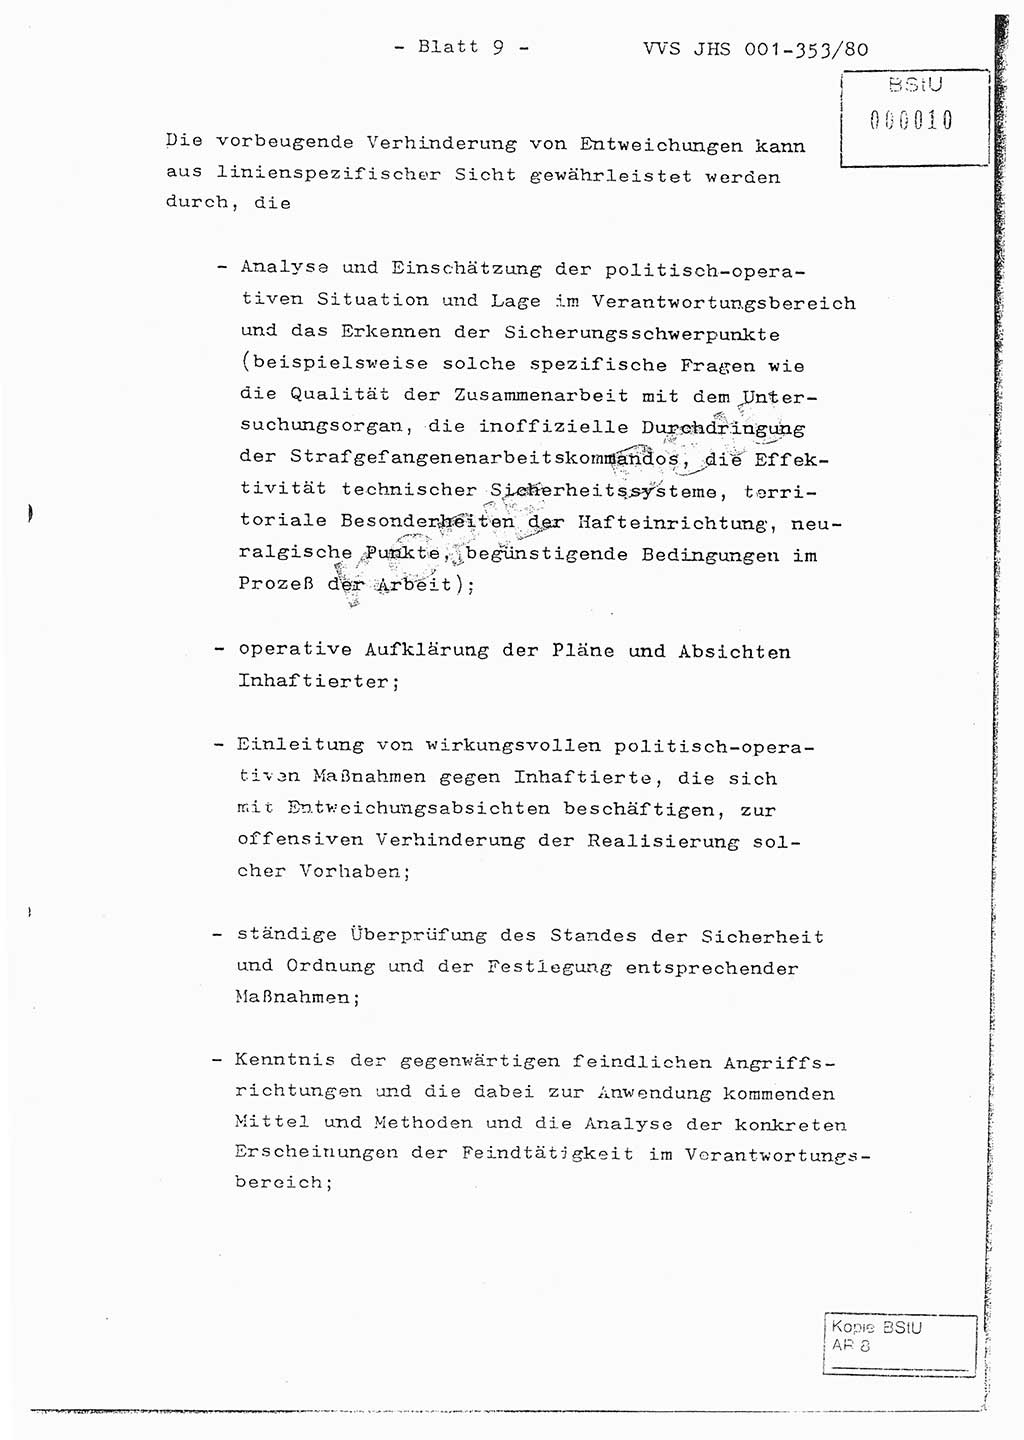 Diplomarbeit Hauptmann Joachim Klaumünzner (Abt. ⅩⅣ), Ministerium für Staatssicherheit (MfS) [Deutsche Demokratische Republik (DDR)], Juristische Hochschule (JHS), Vertrauliche Verschlußsache (VVS) o001-353/80, Potsdam 1980, Blatt 9 (Dipl.-Arb. MfS DDR JHS VVS o001-353/80 1980, Bl. 9)